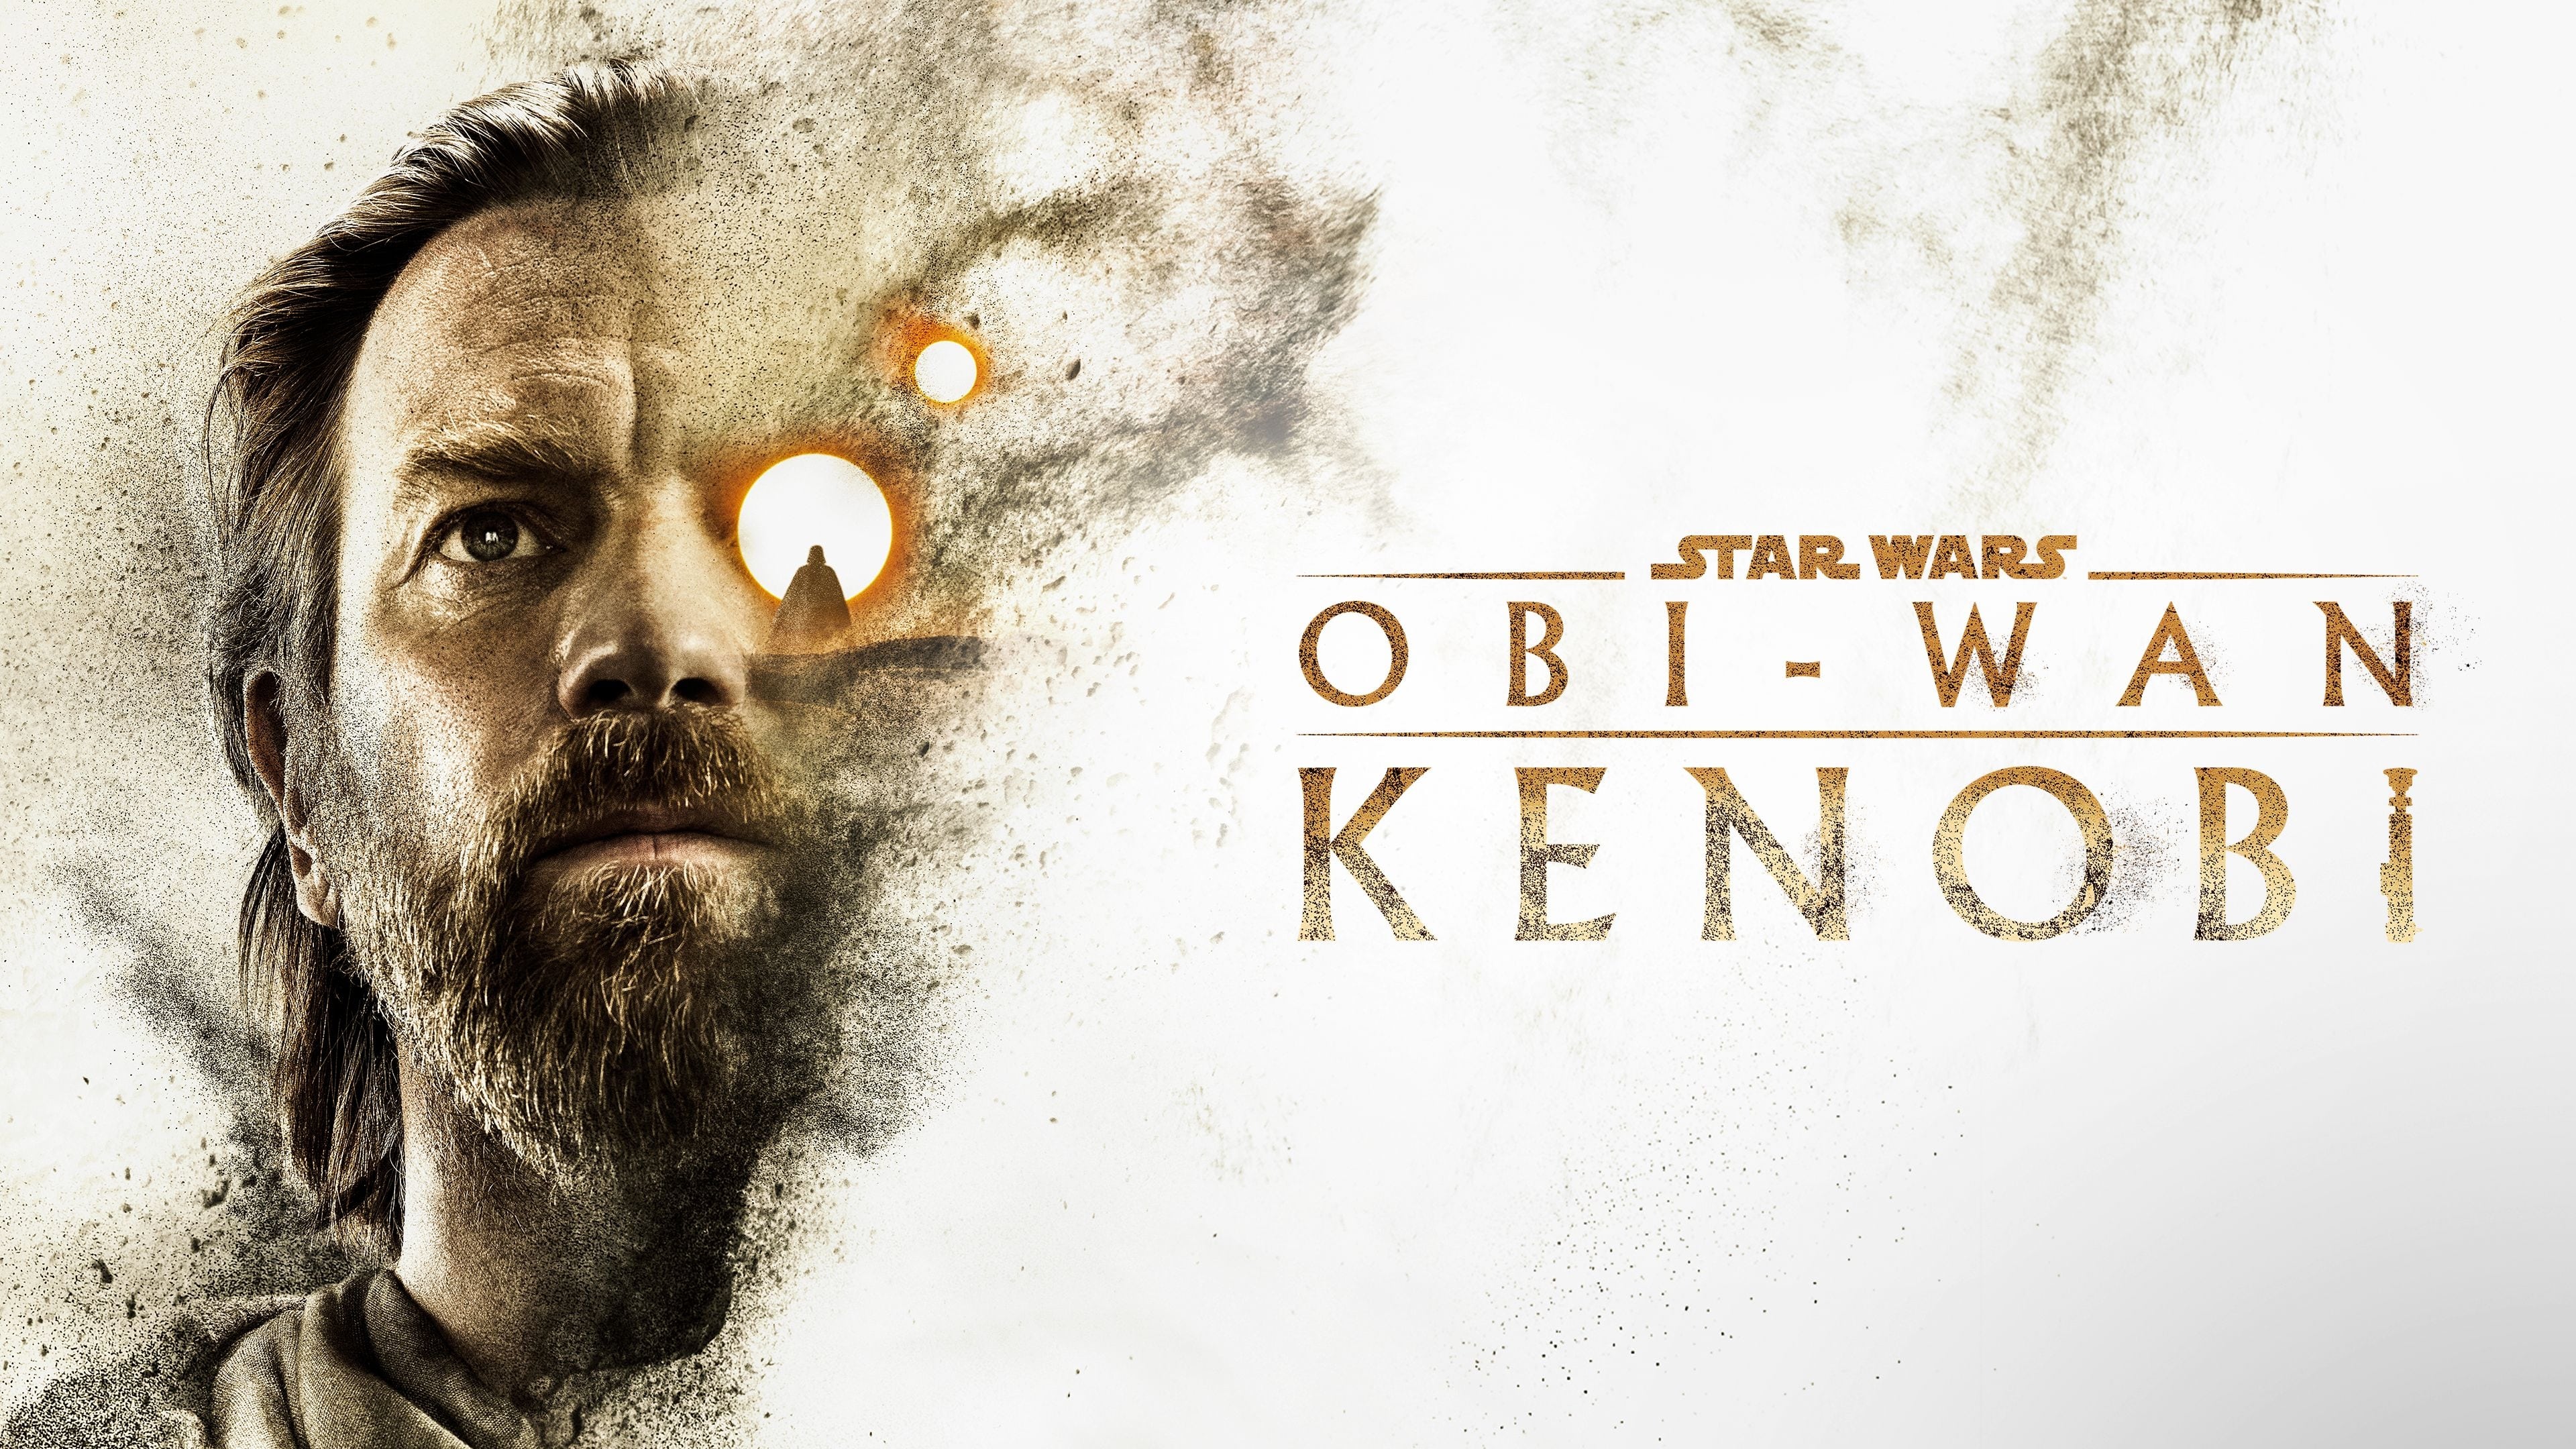 Obi-Wan Kenobi - Season 1 Episode 5